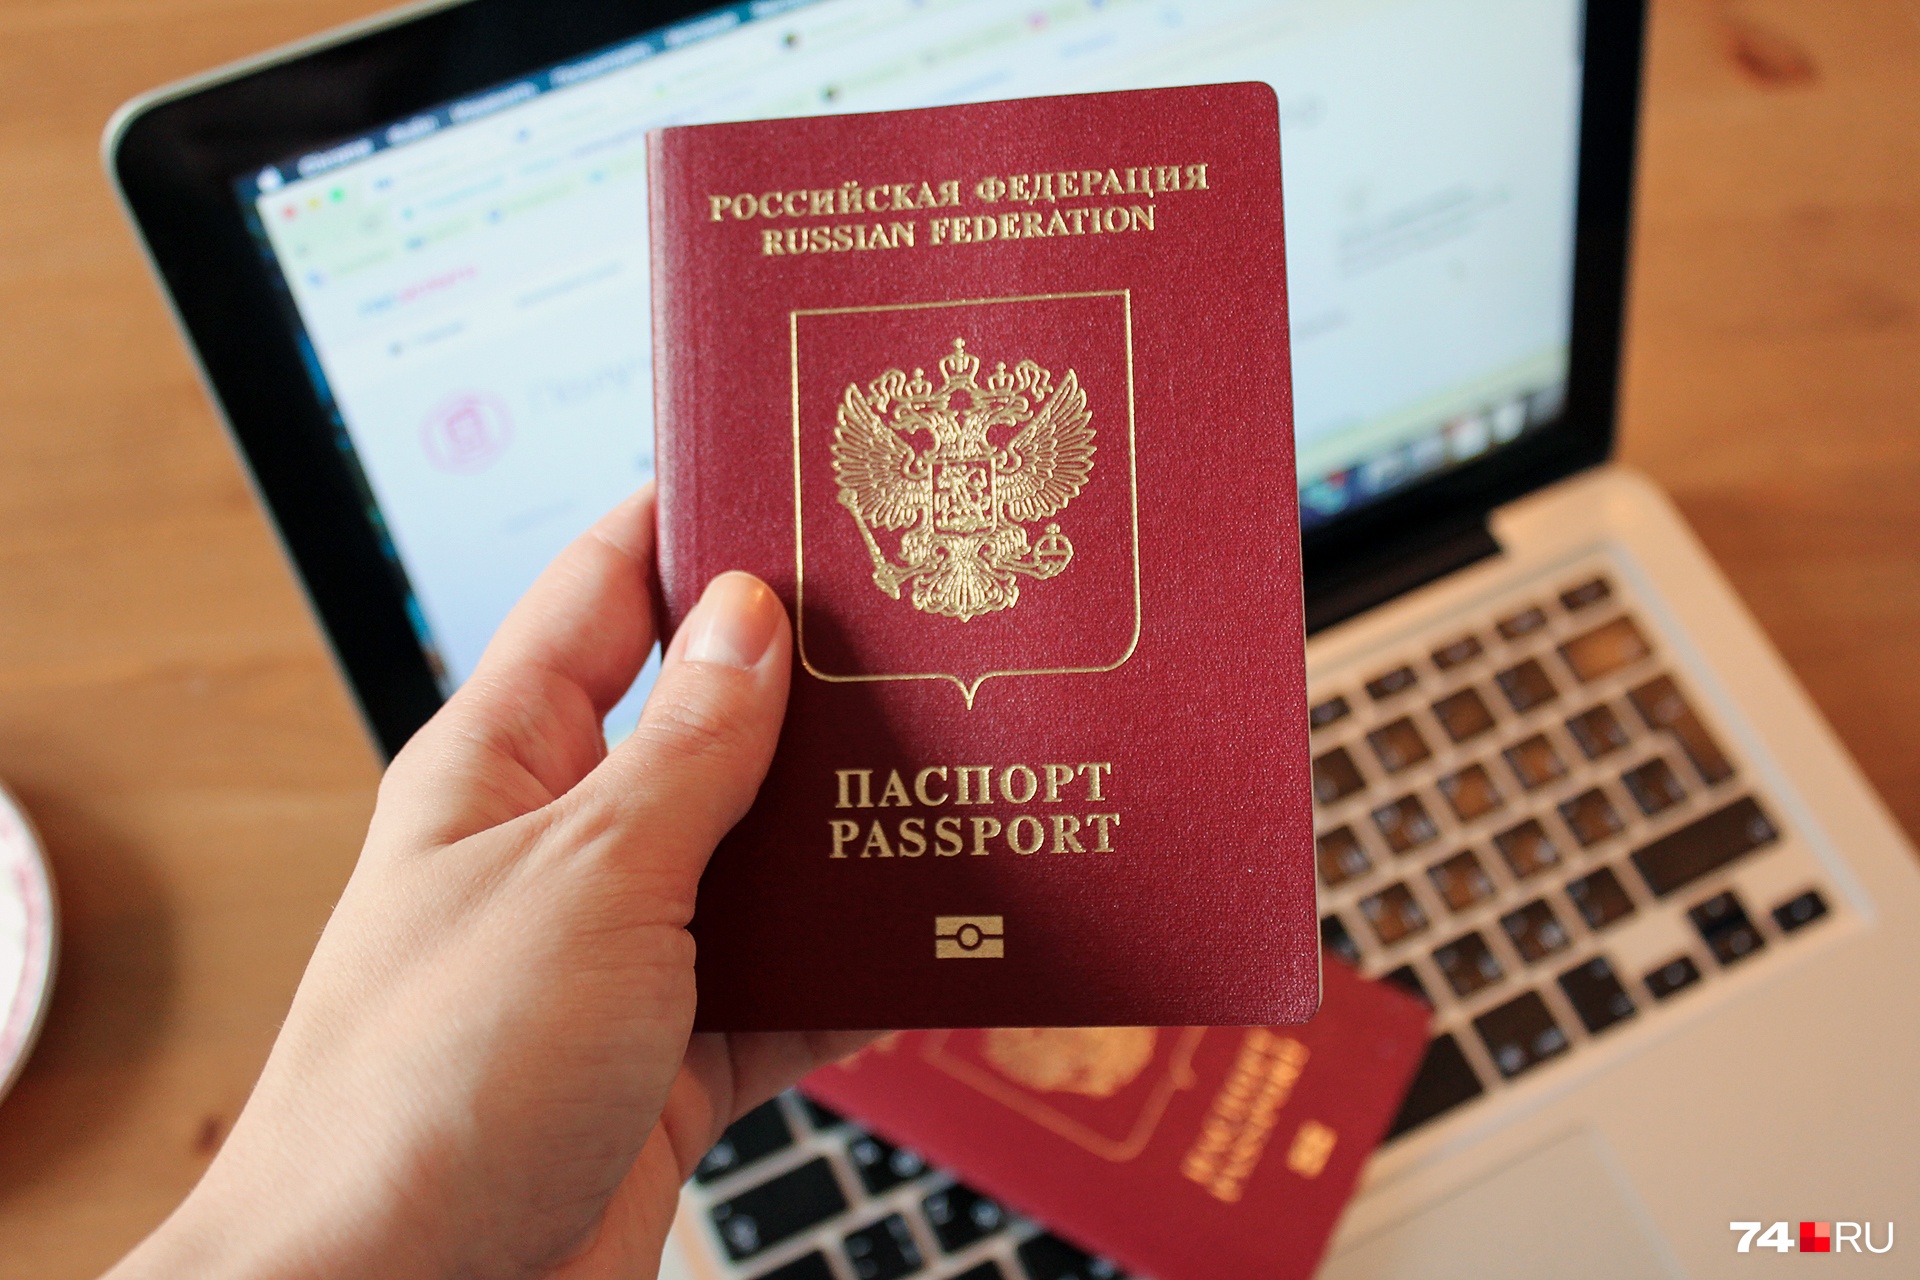 Въехать в Эстонию с российским паспортом можно, но нужна шенгенская виза, полученная в другой стране